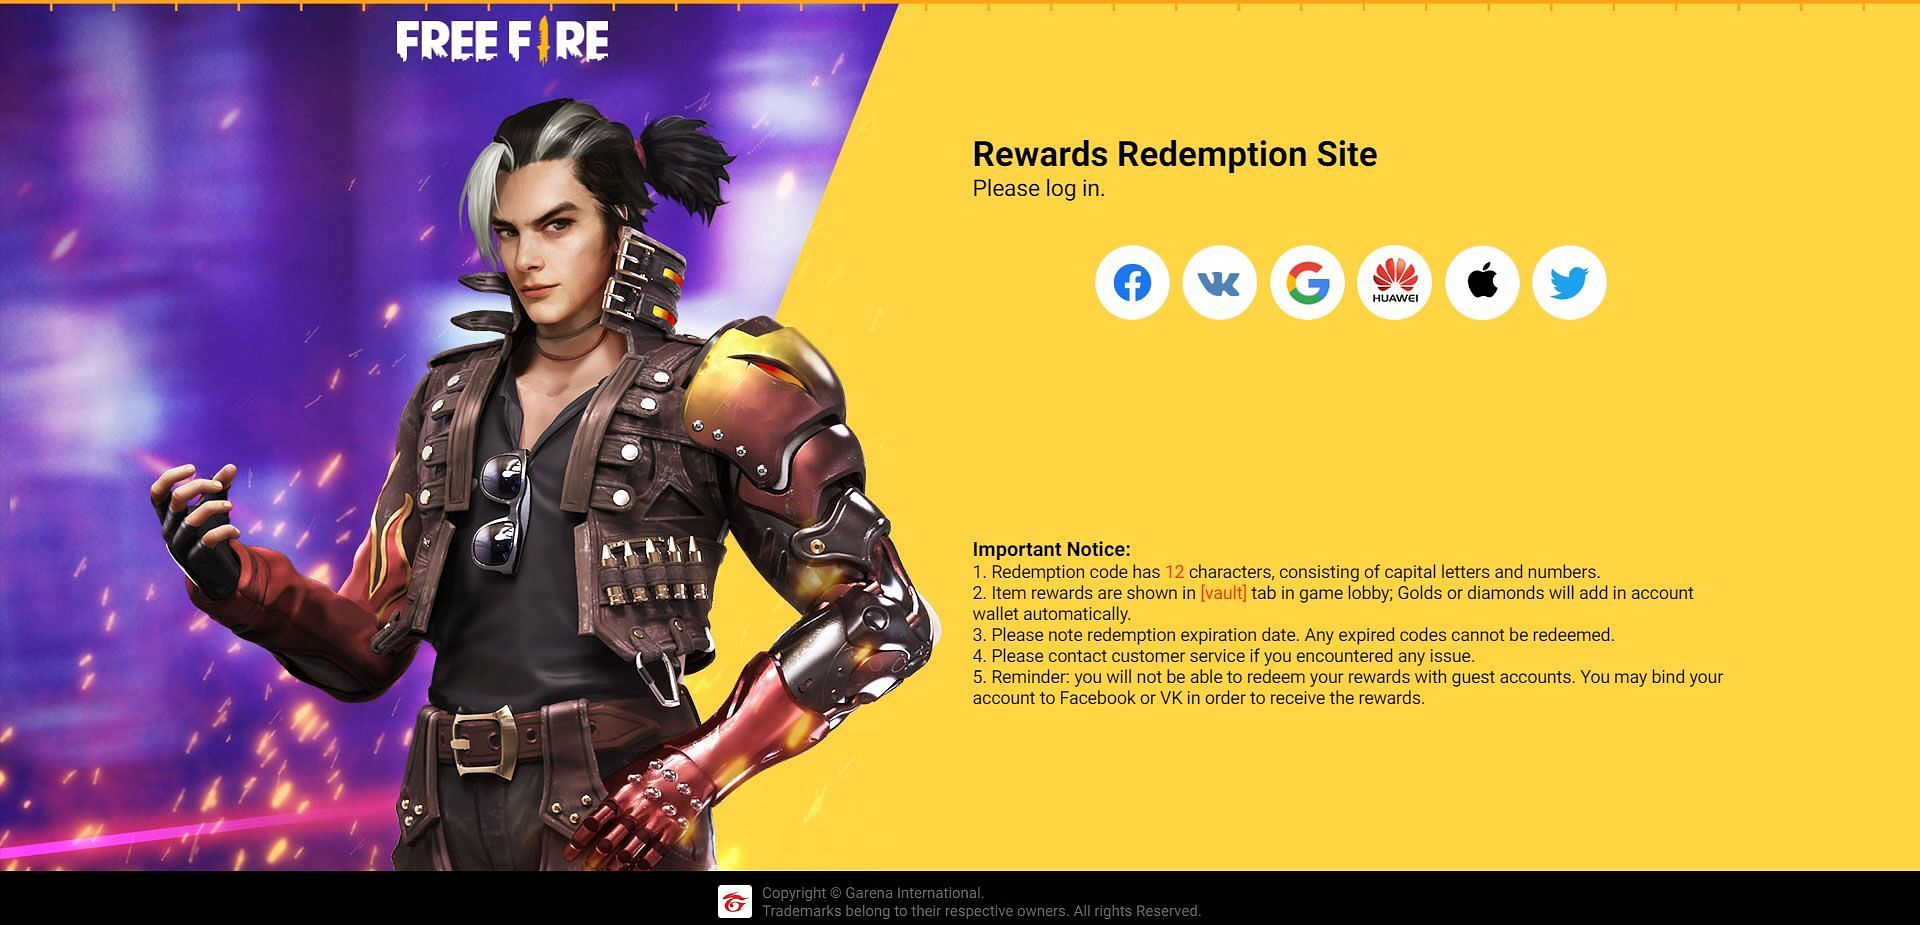 Enter Garena has a specific &quot;Rewards Redemption Site&quot; (Image via Garena)